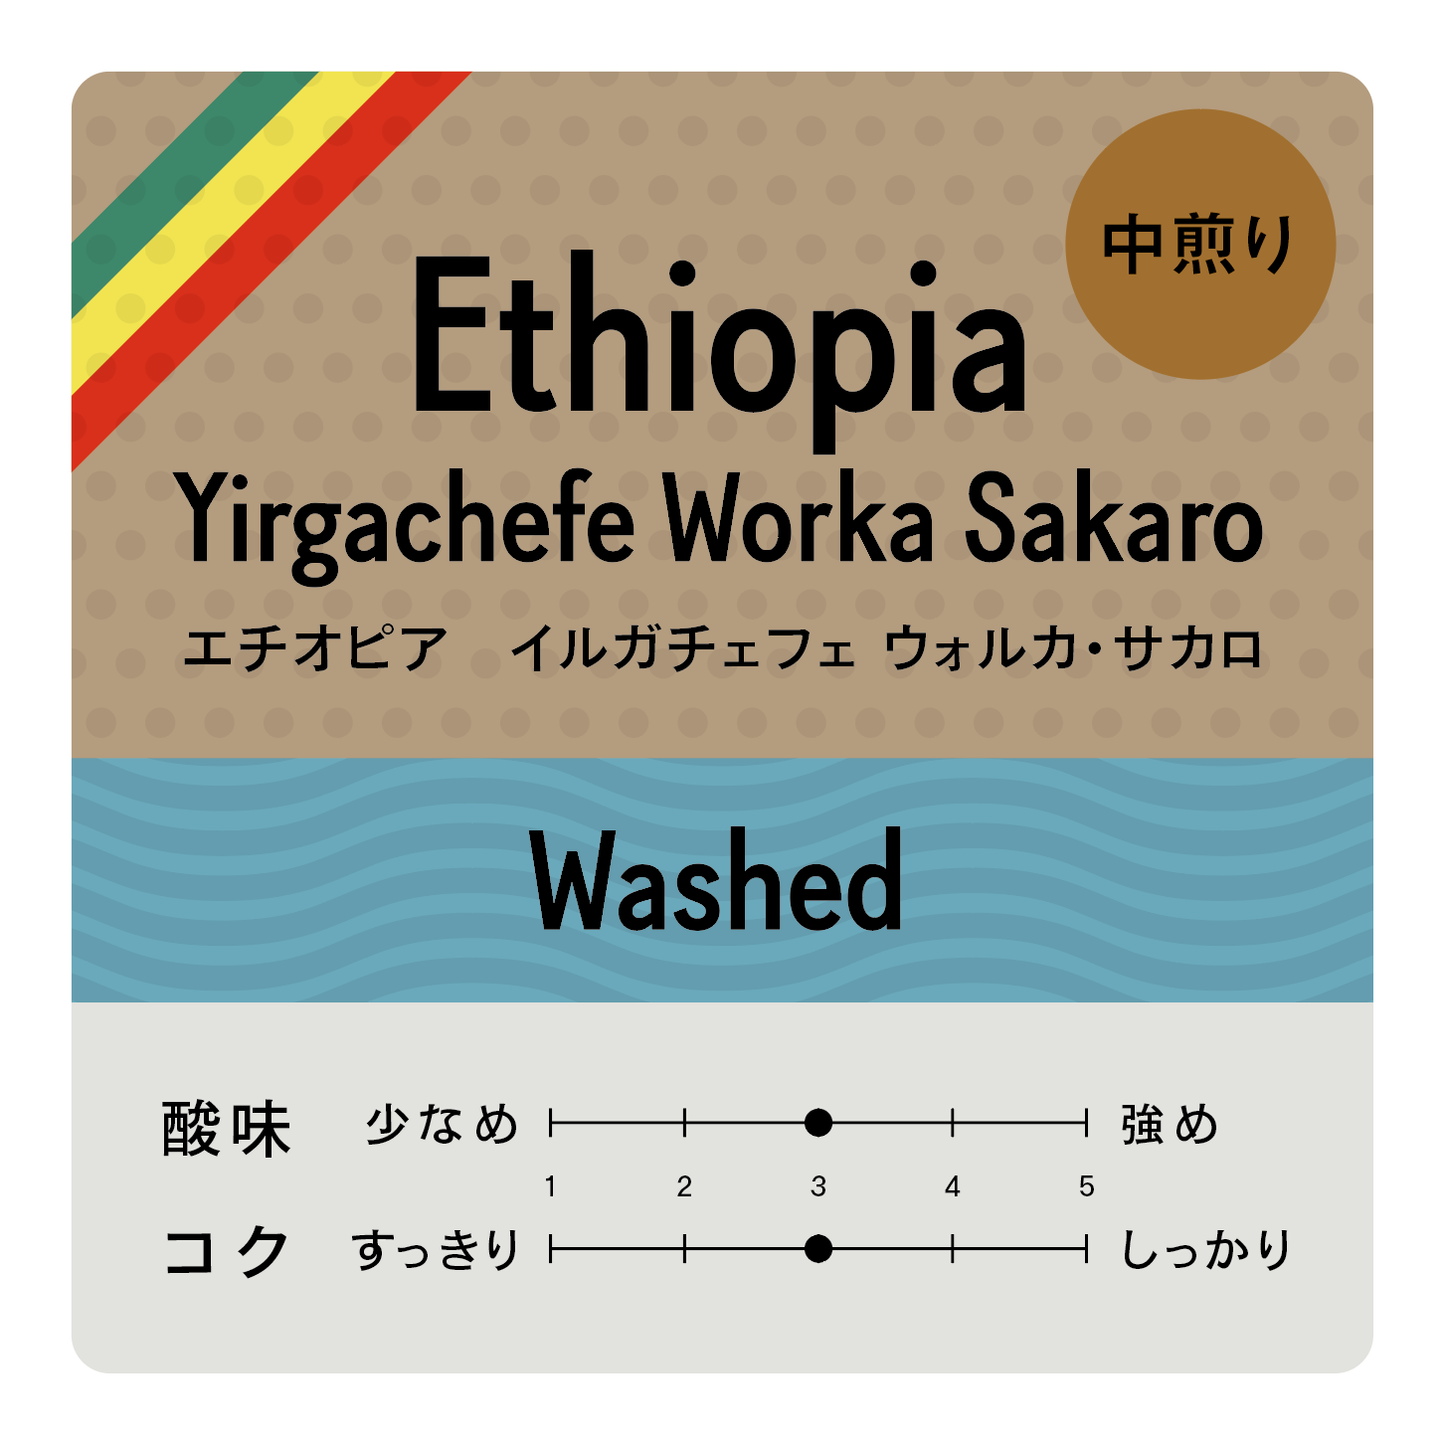 [豆] エチオピア イルガチェフェ ウォルカ サカロ